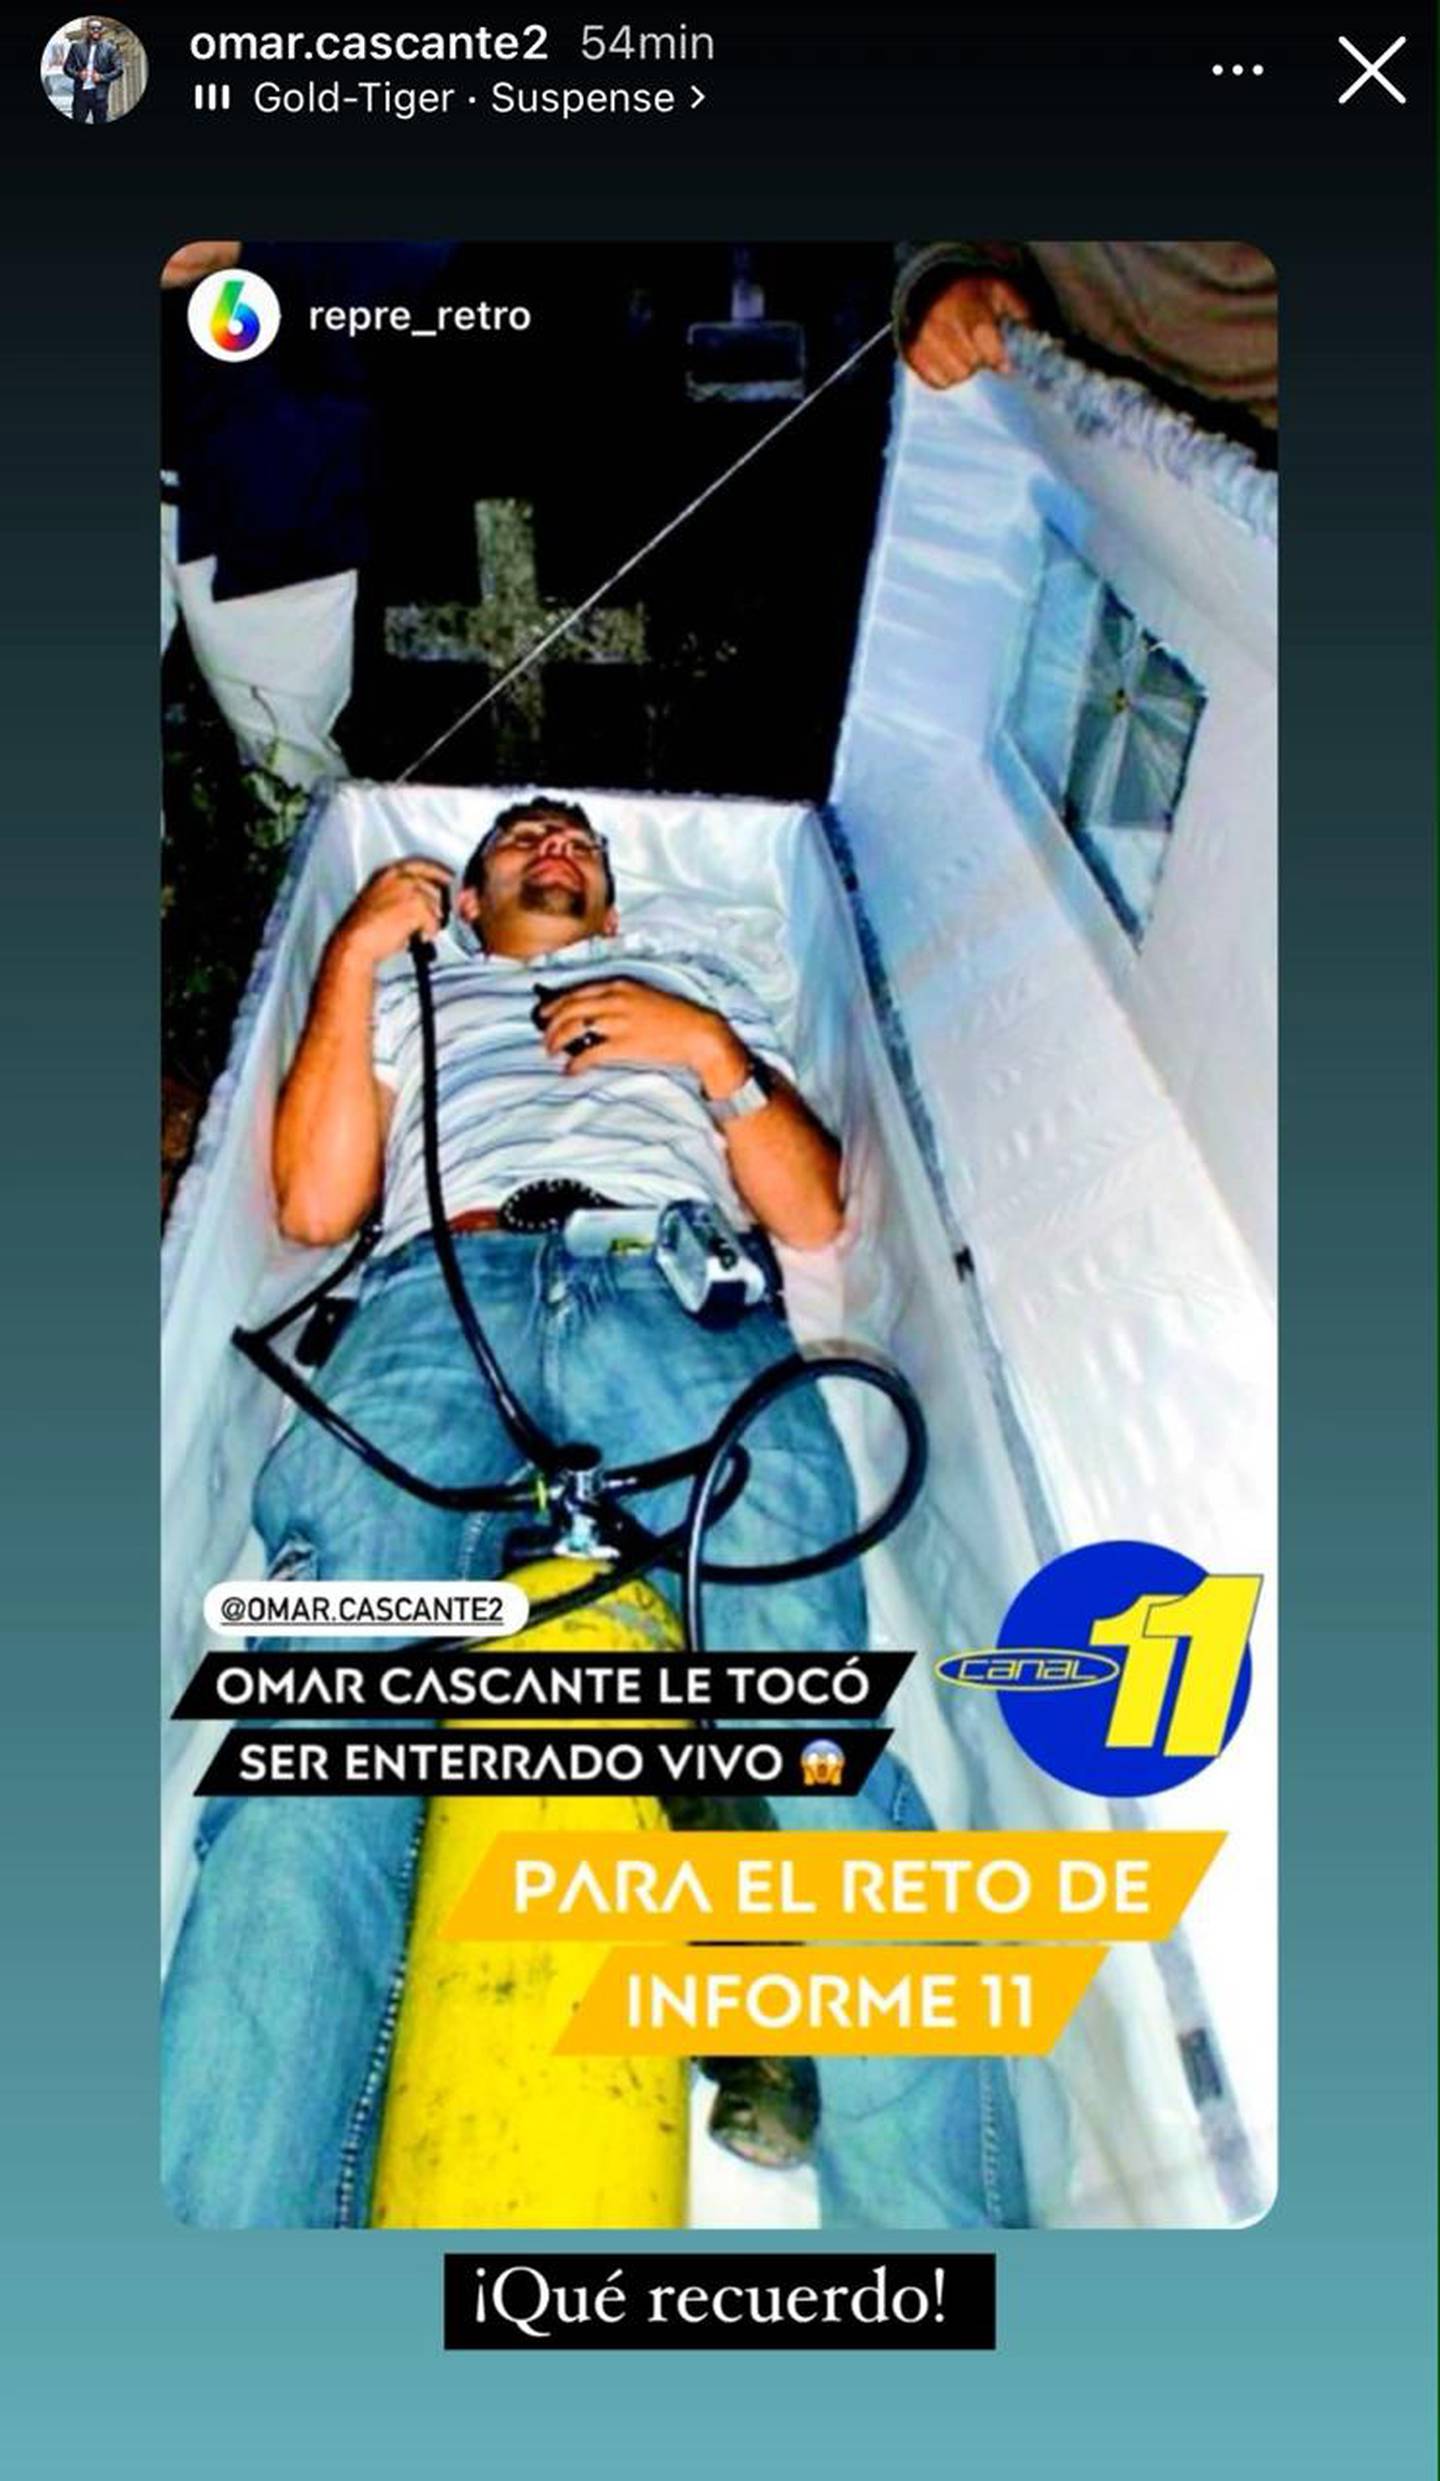 Omar Cascante
Teletica
Repretel
Informe 11: Las Historias